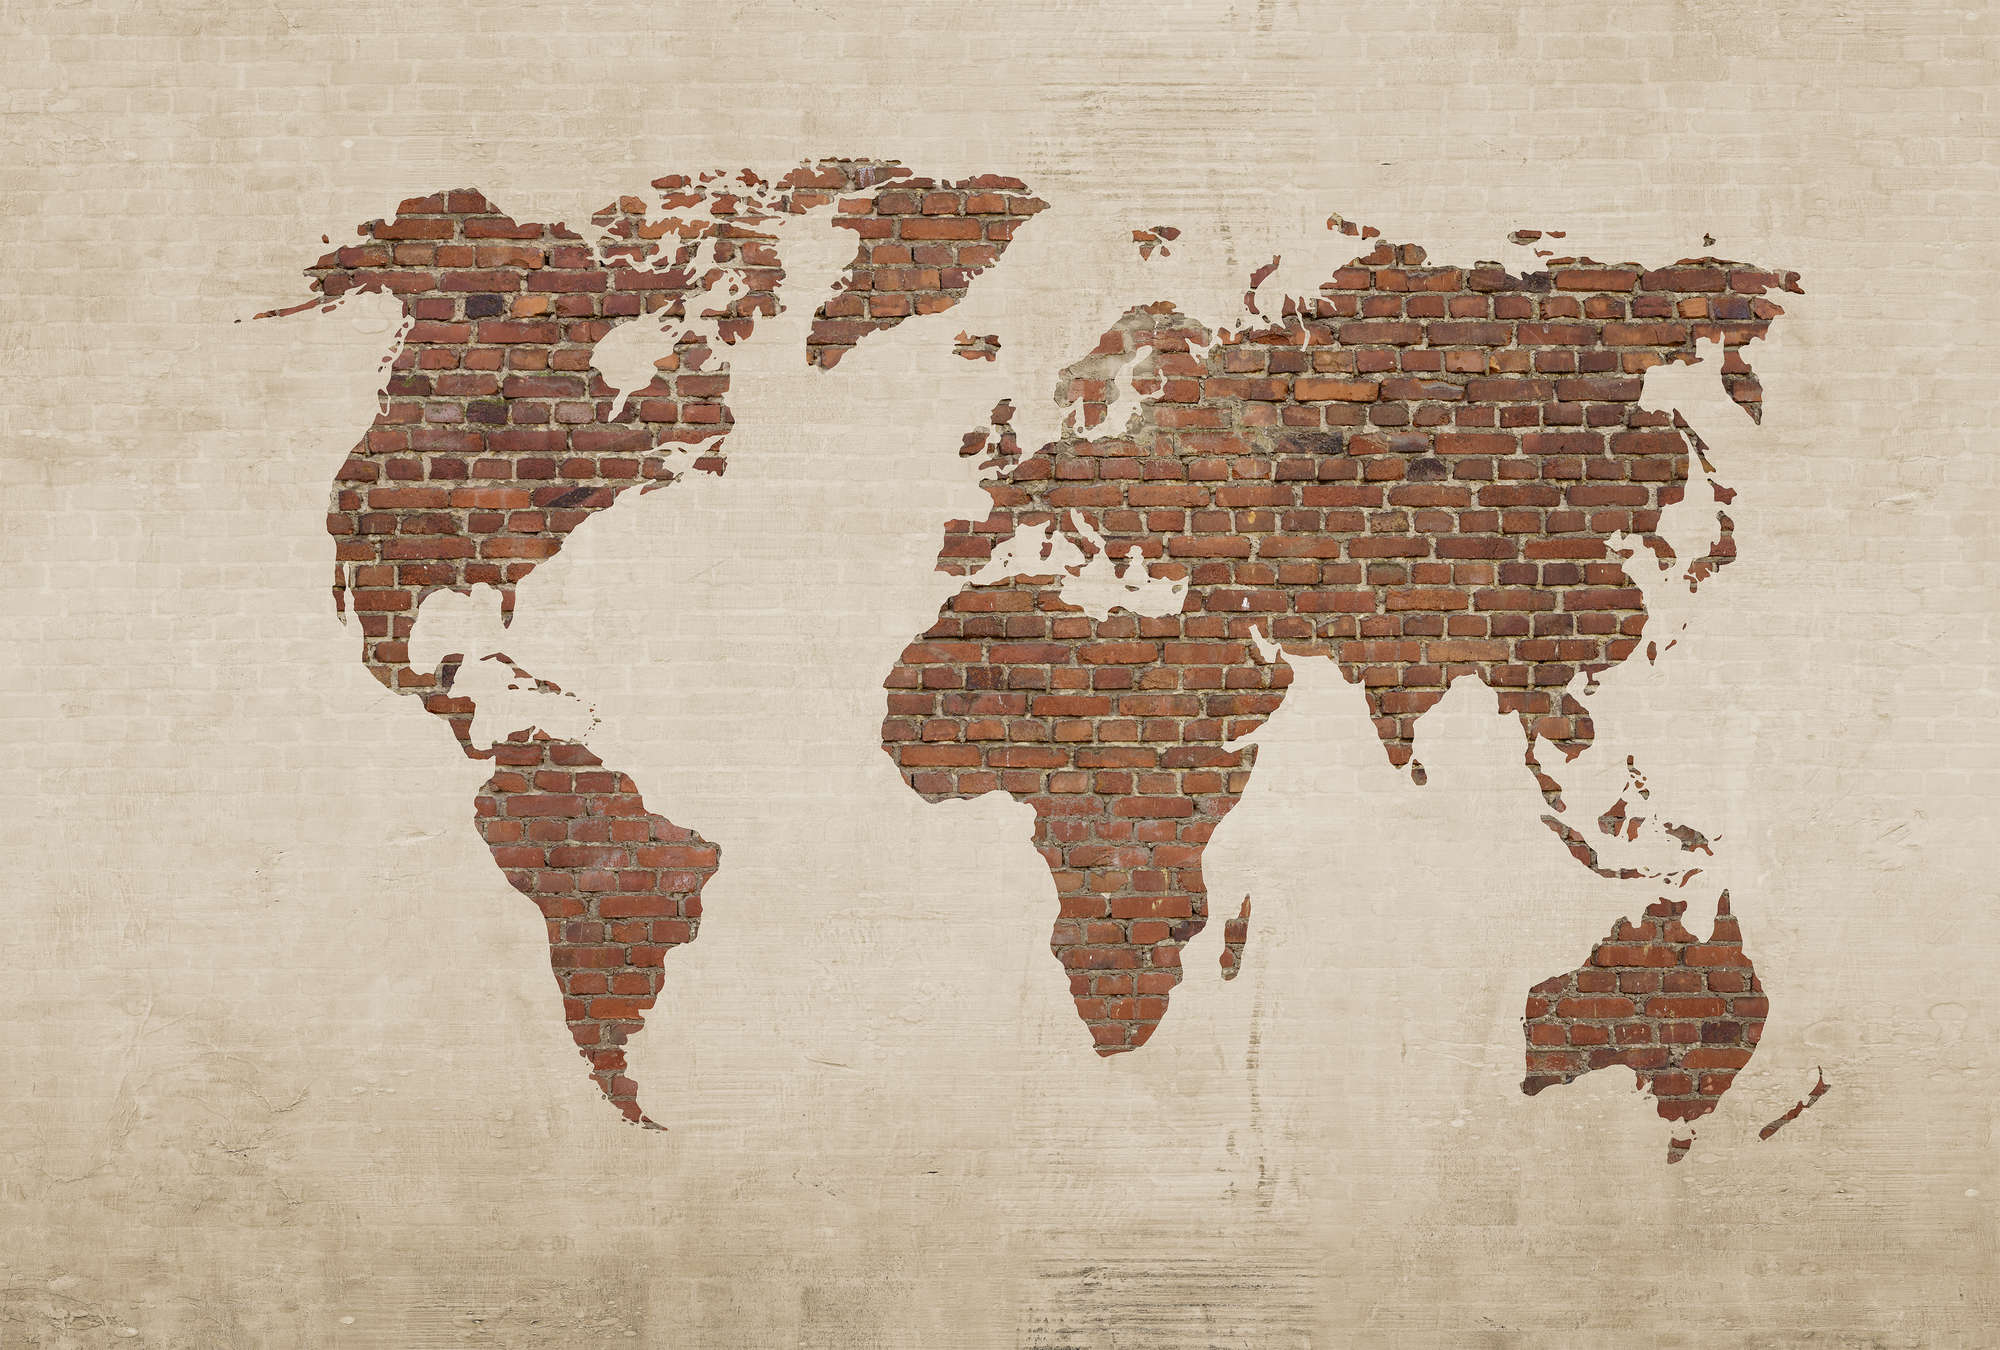             Papier peint panoramique imitation mur et carte du monde - crème, marron
        